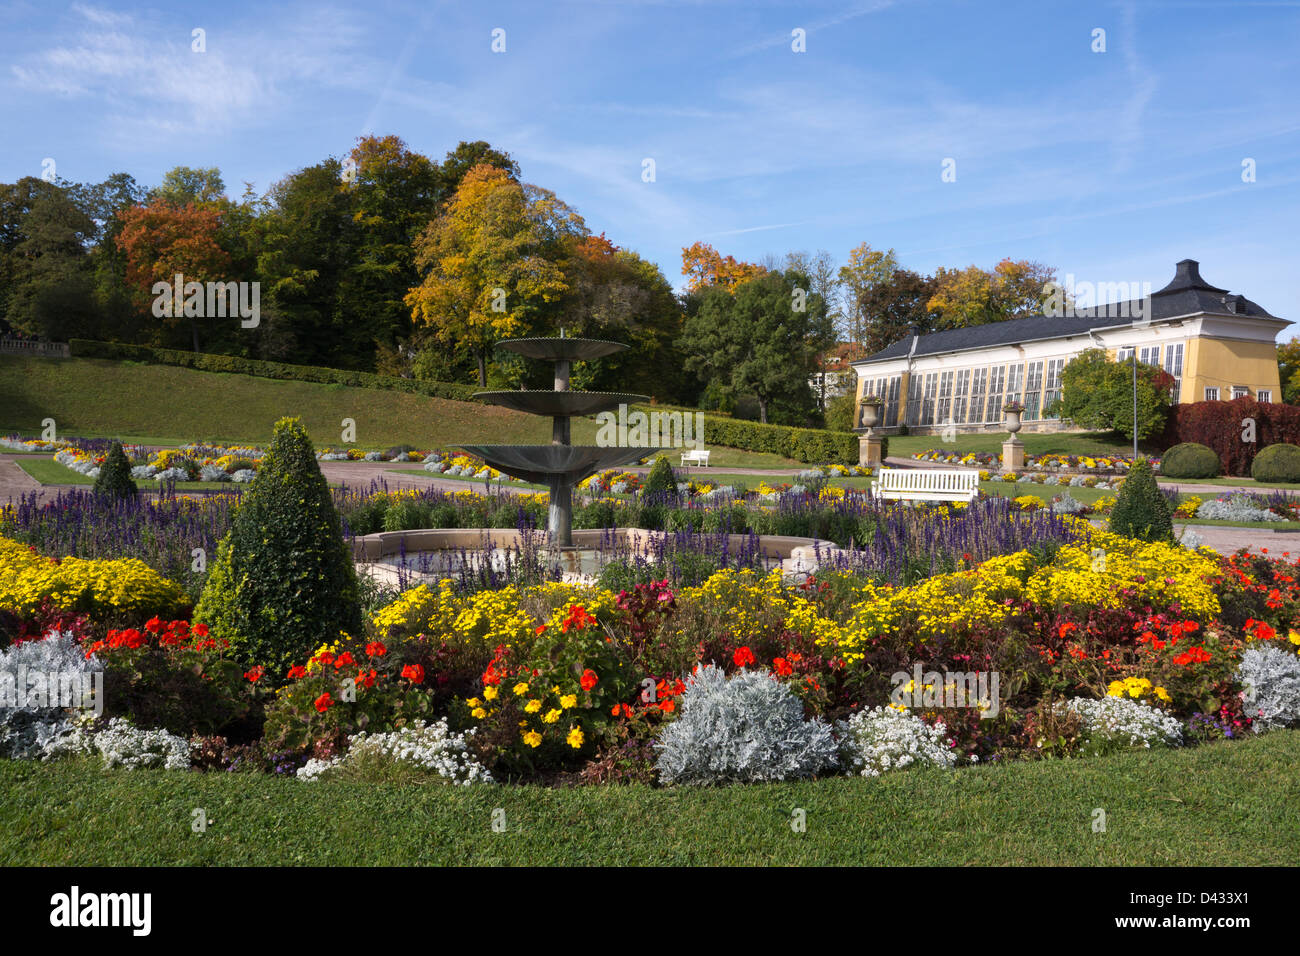 Baroque garden of Schloss Friedenstein castle, Gotha, Thuringia, Germany, Europe Stock Photo